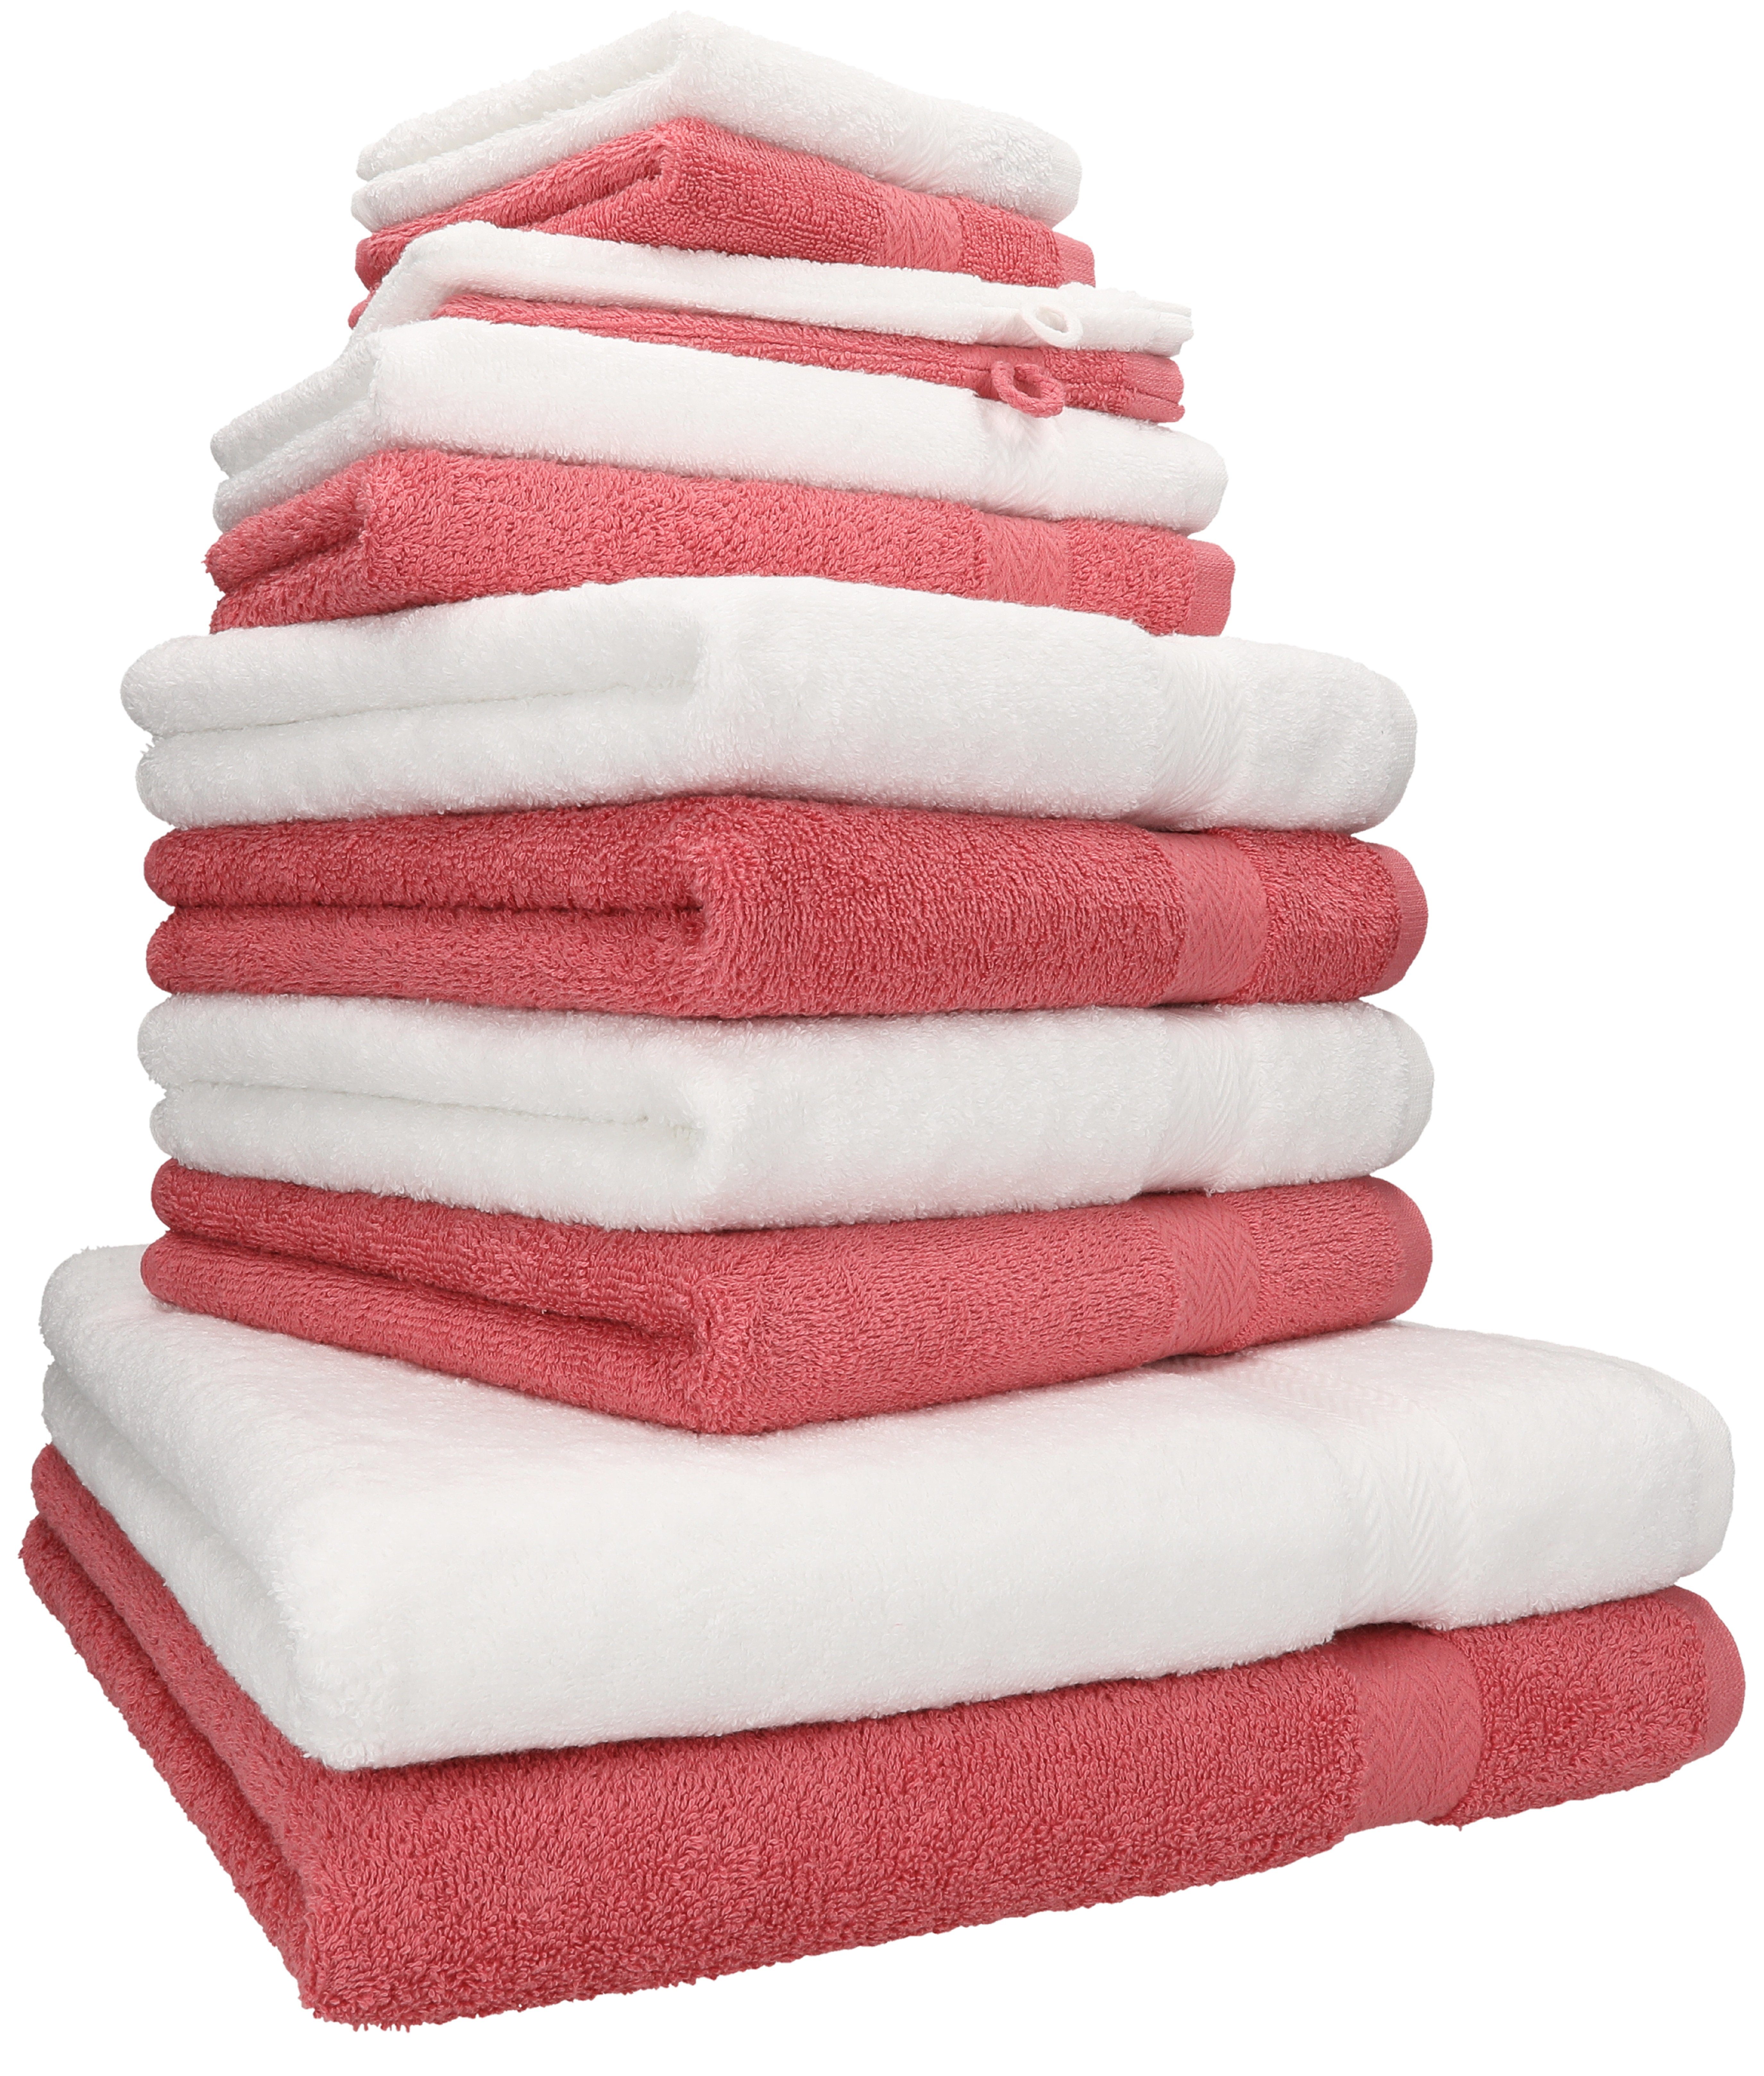 Betz Handtuch Set 12-TLG. Handtuch Set Premium 100% Baumwolle Farbe weiß/Himbeere, 100% Baumwolle, (12-tlg) | Handtuch-Sets